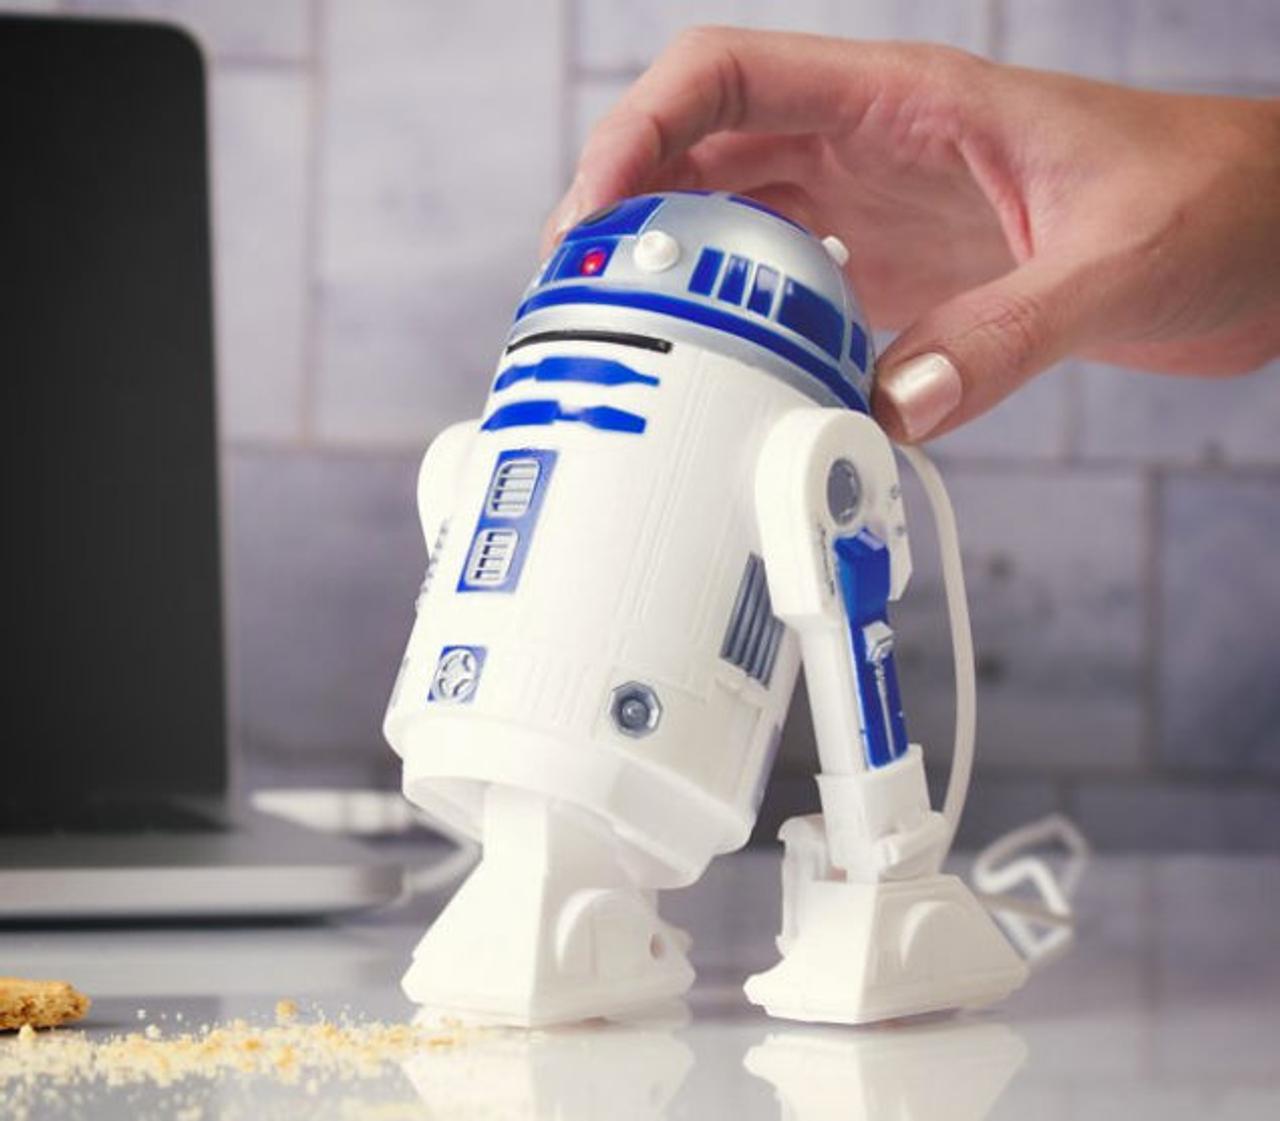 ちゃんとロボットしてるぅ! R2-D2が消しカスを吸いとるデスク用そうじ機に